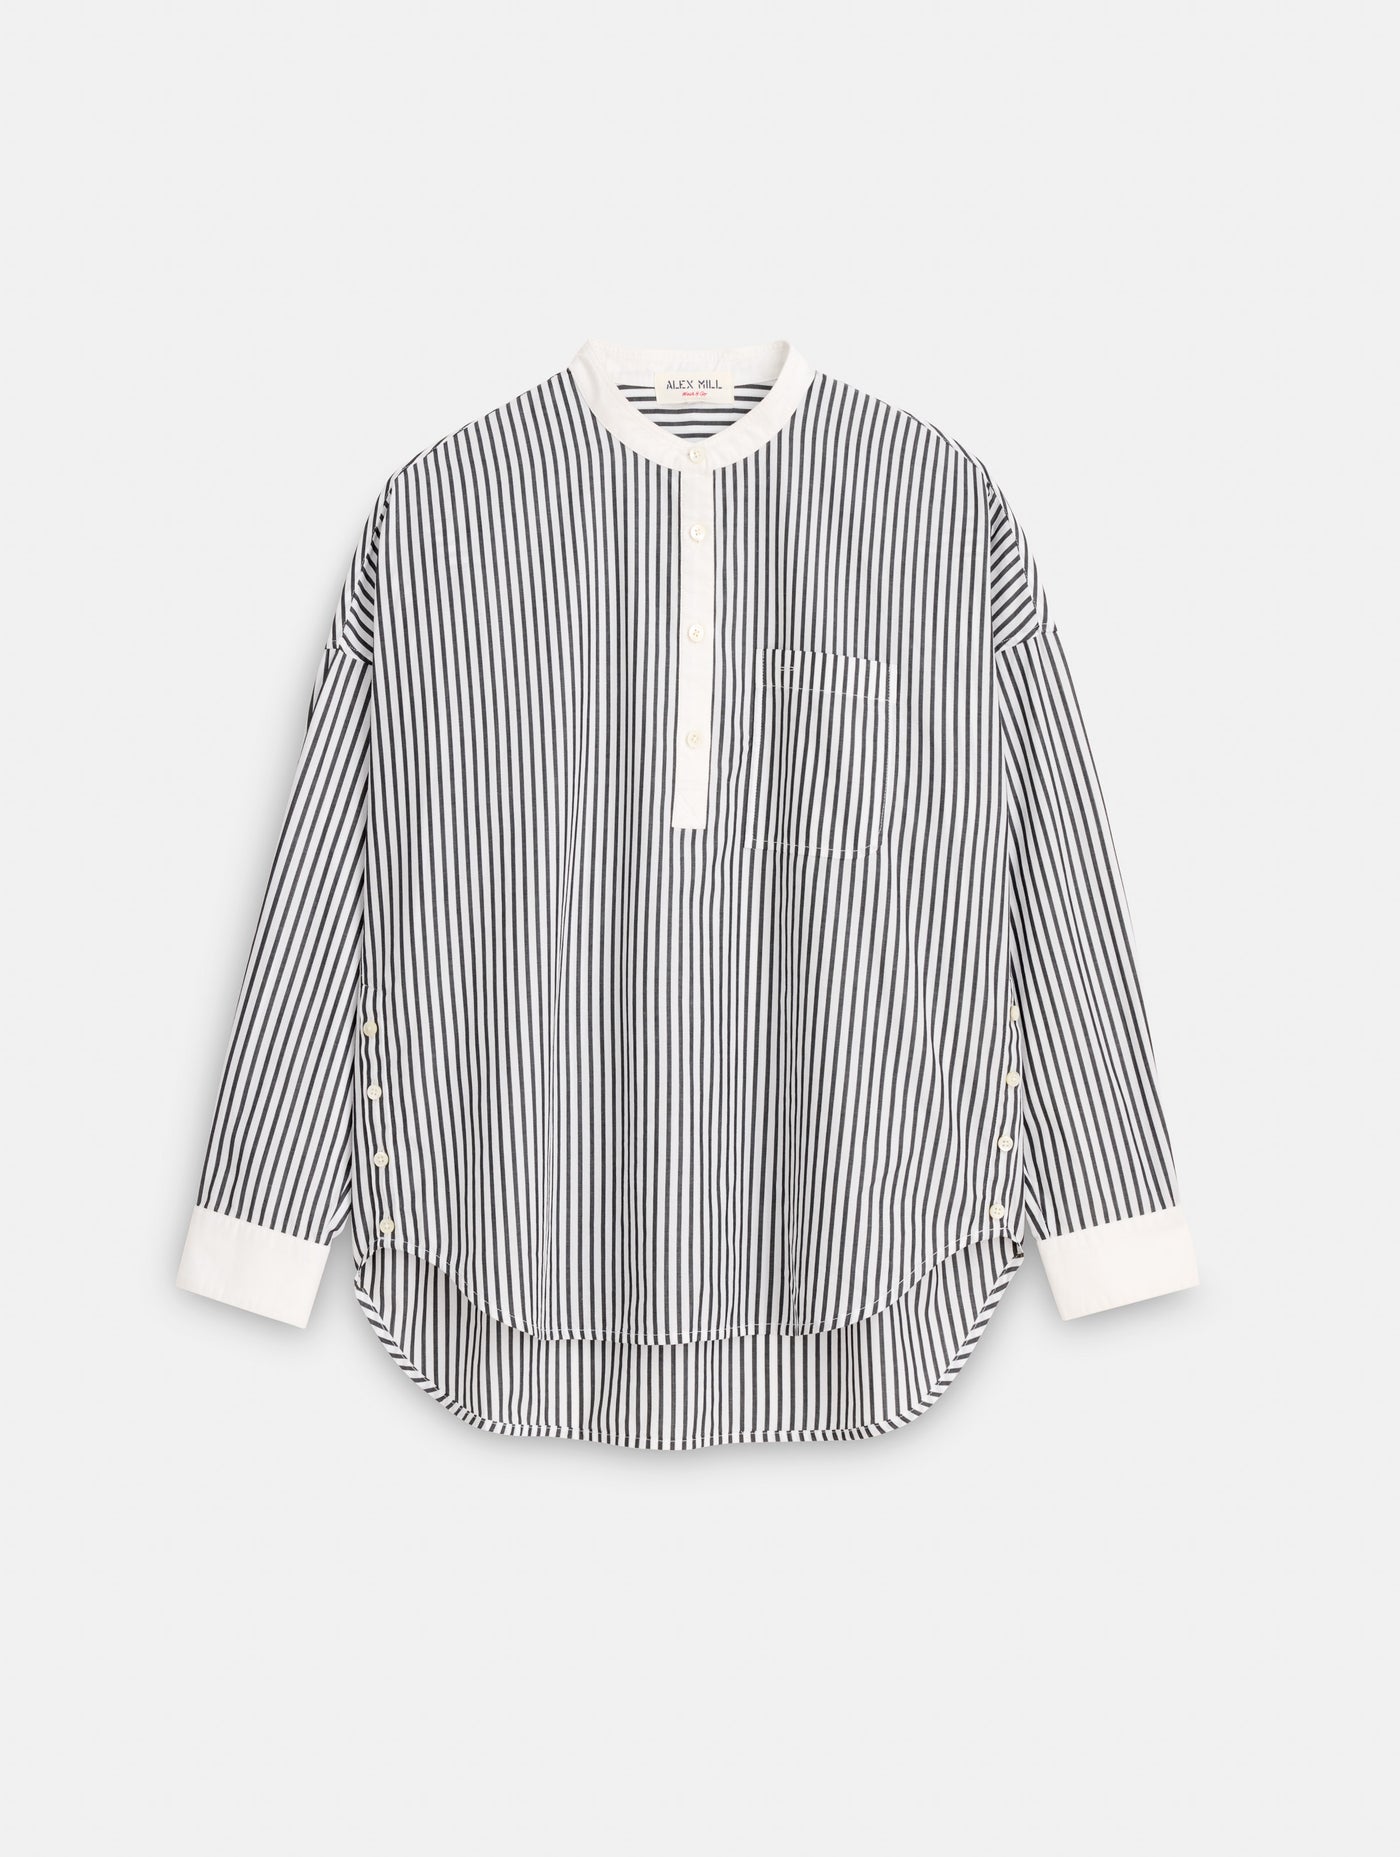 Jo Striped Popover Shirt in Cotton